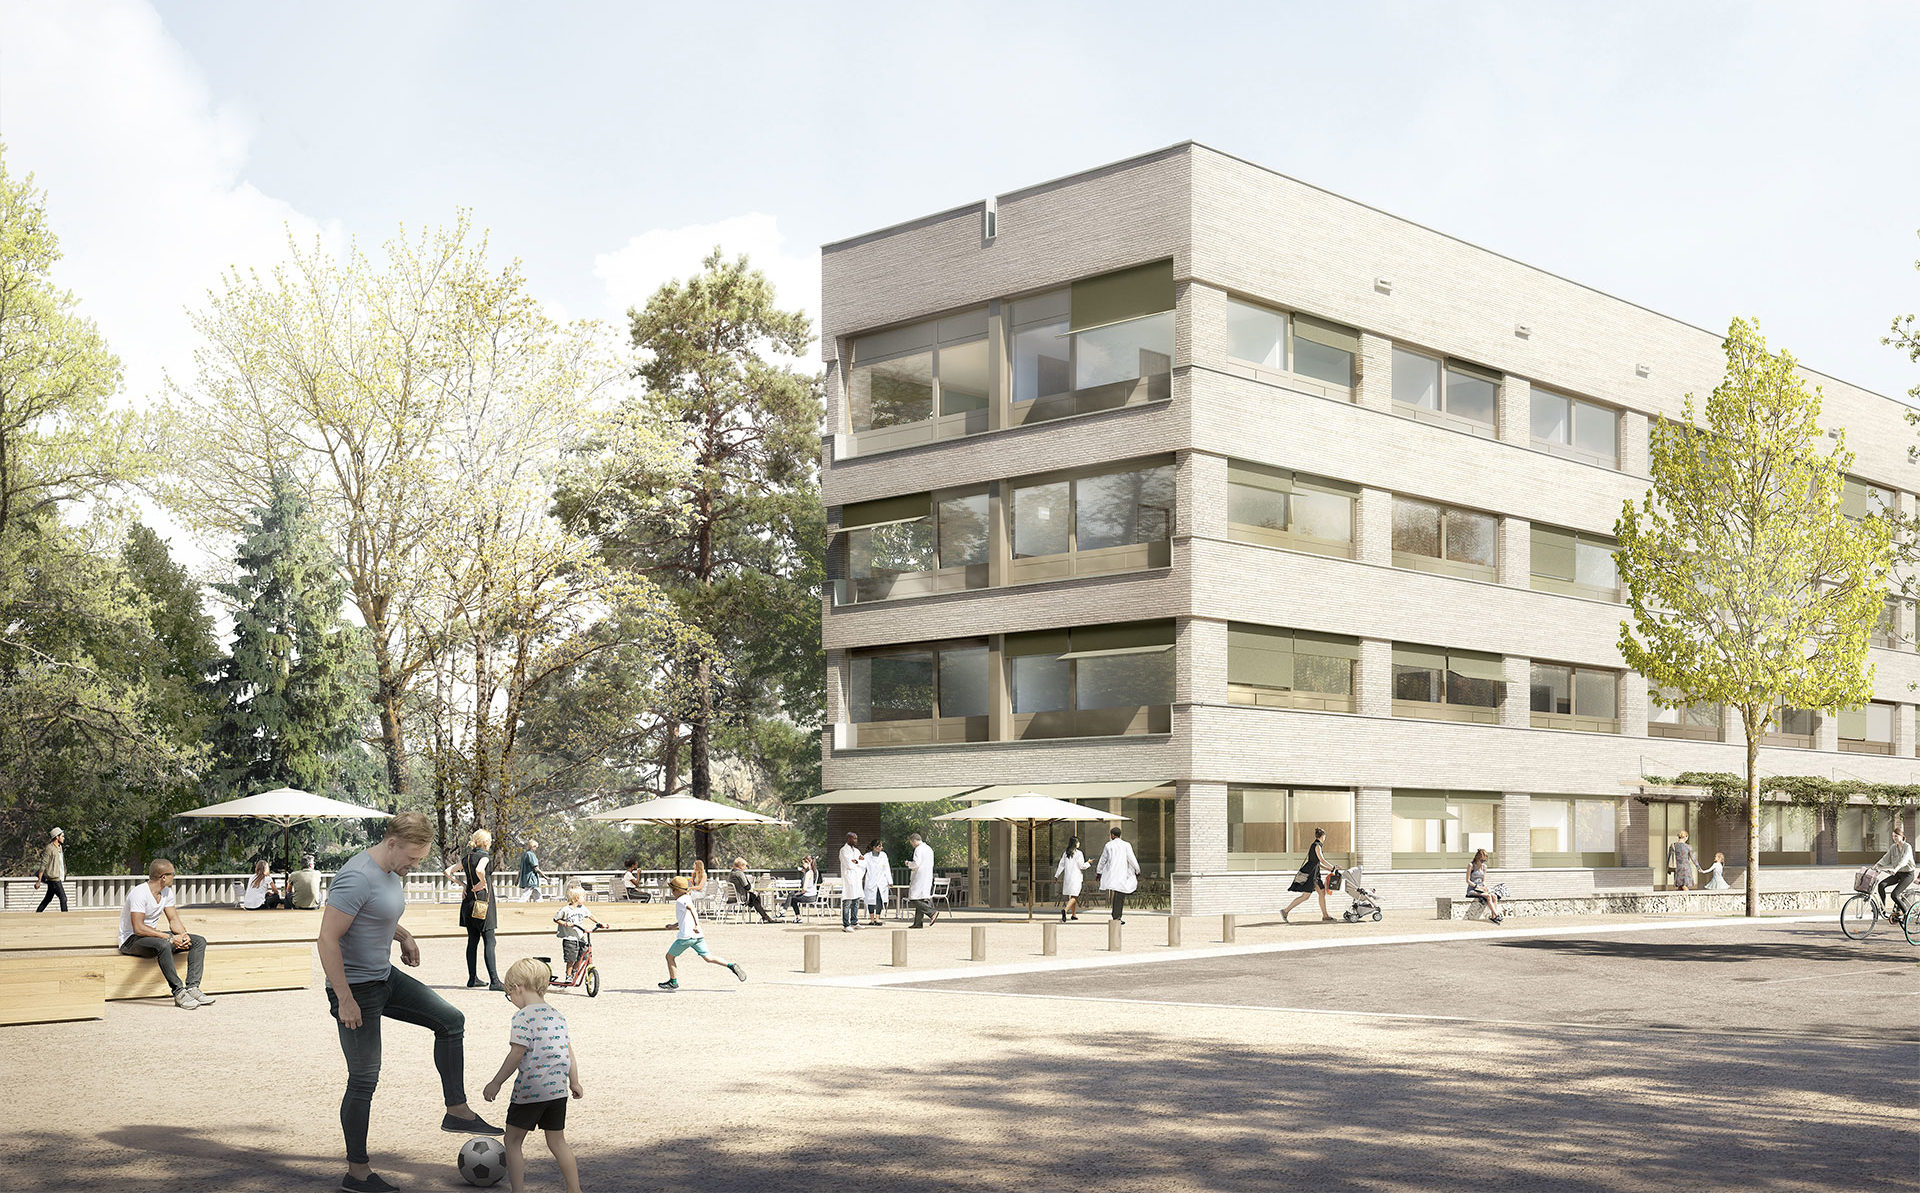 Nouveau centre de chirurgie ambulatoire à Genève : Pose de la première pierre - Copyright : Meier+ associés architectes